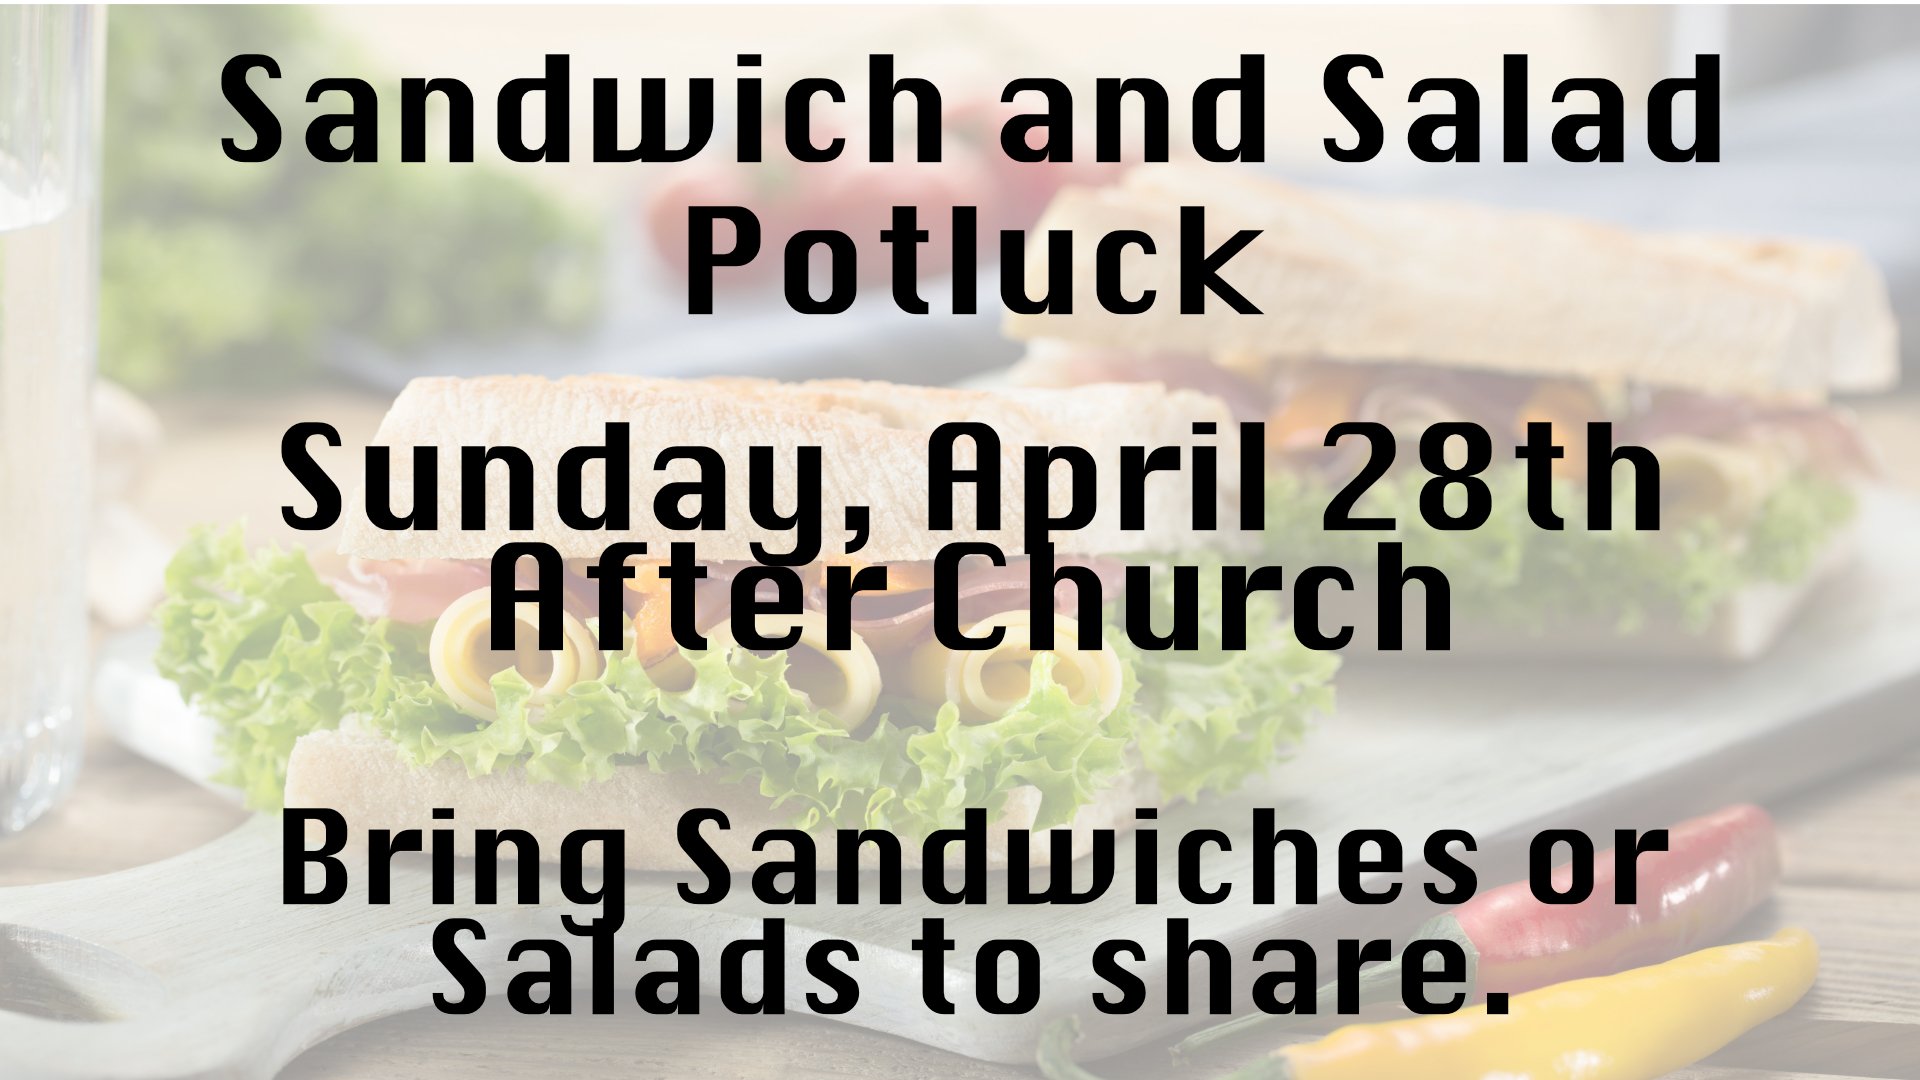 sandwich_salad potluck.jpg